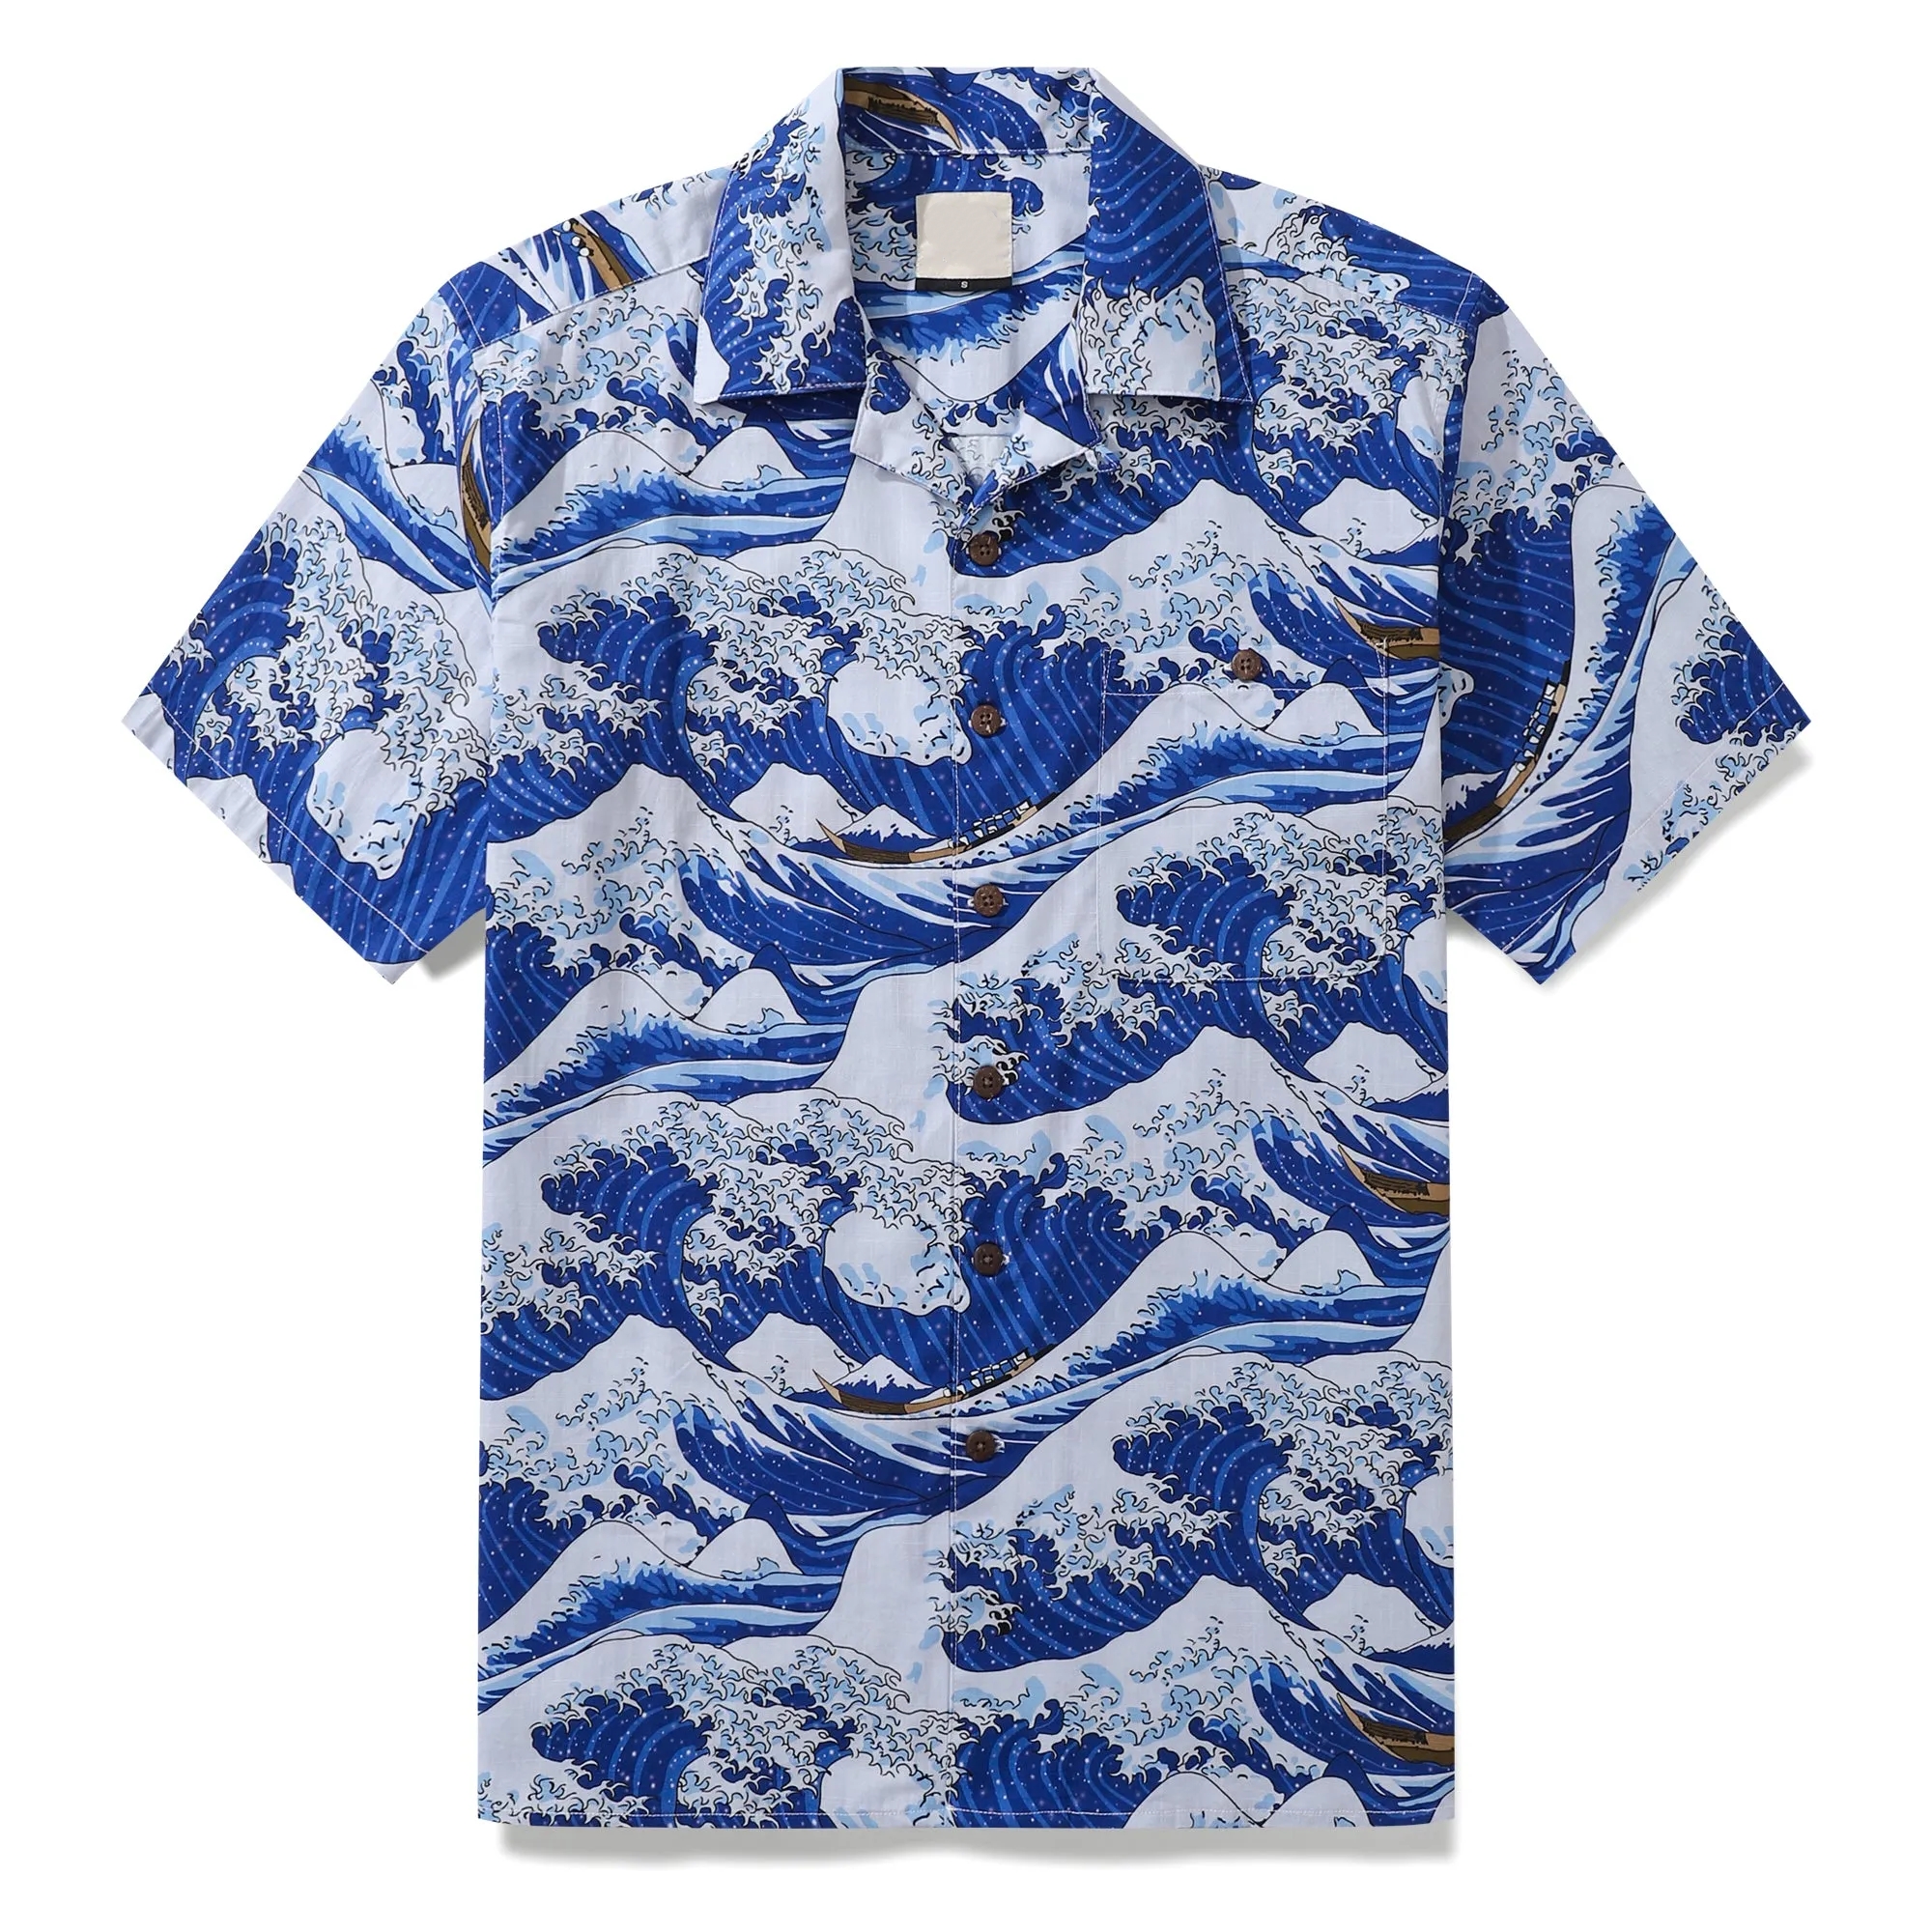 Men's Ocean Waves Hawaiian Holiday Short Sleeve Shirt